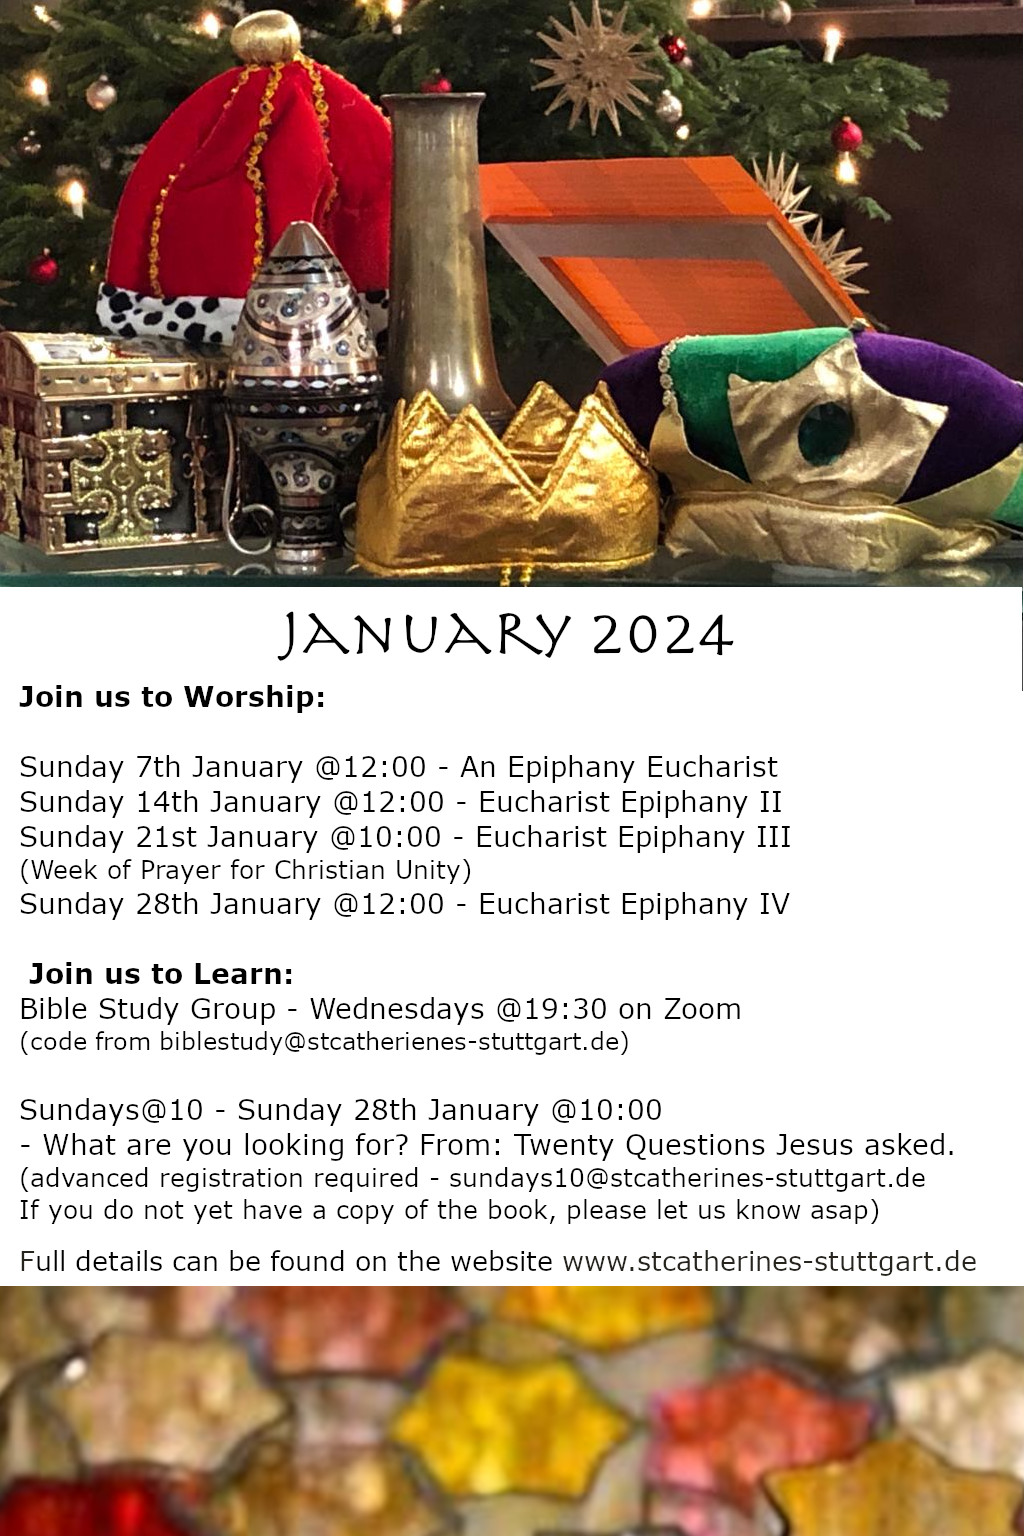 January Worship Schedule 1,2,4, Sundays @12:00 3 Sunday @10:00